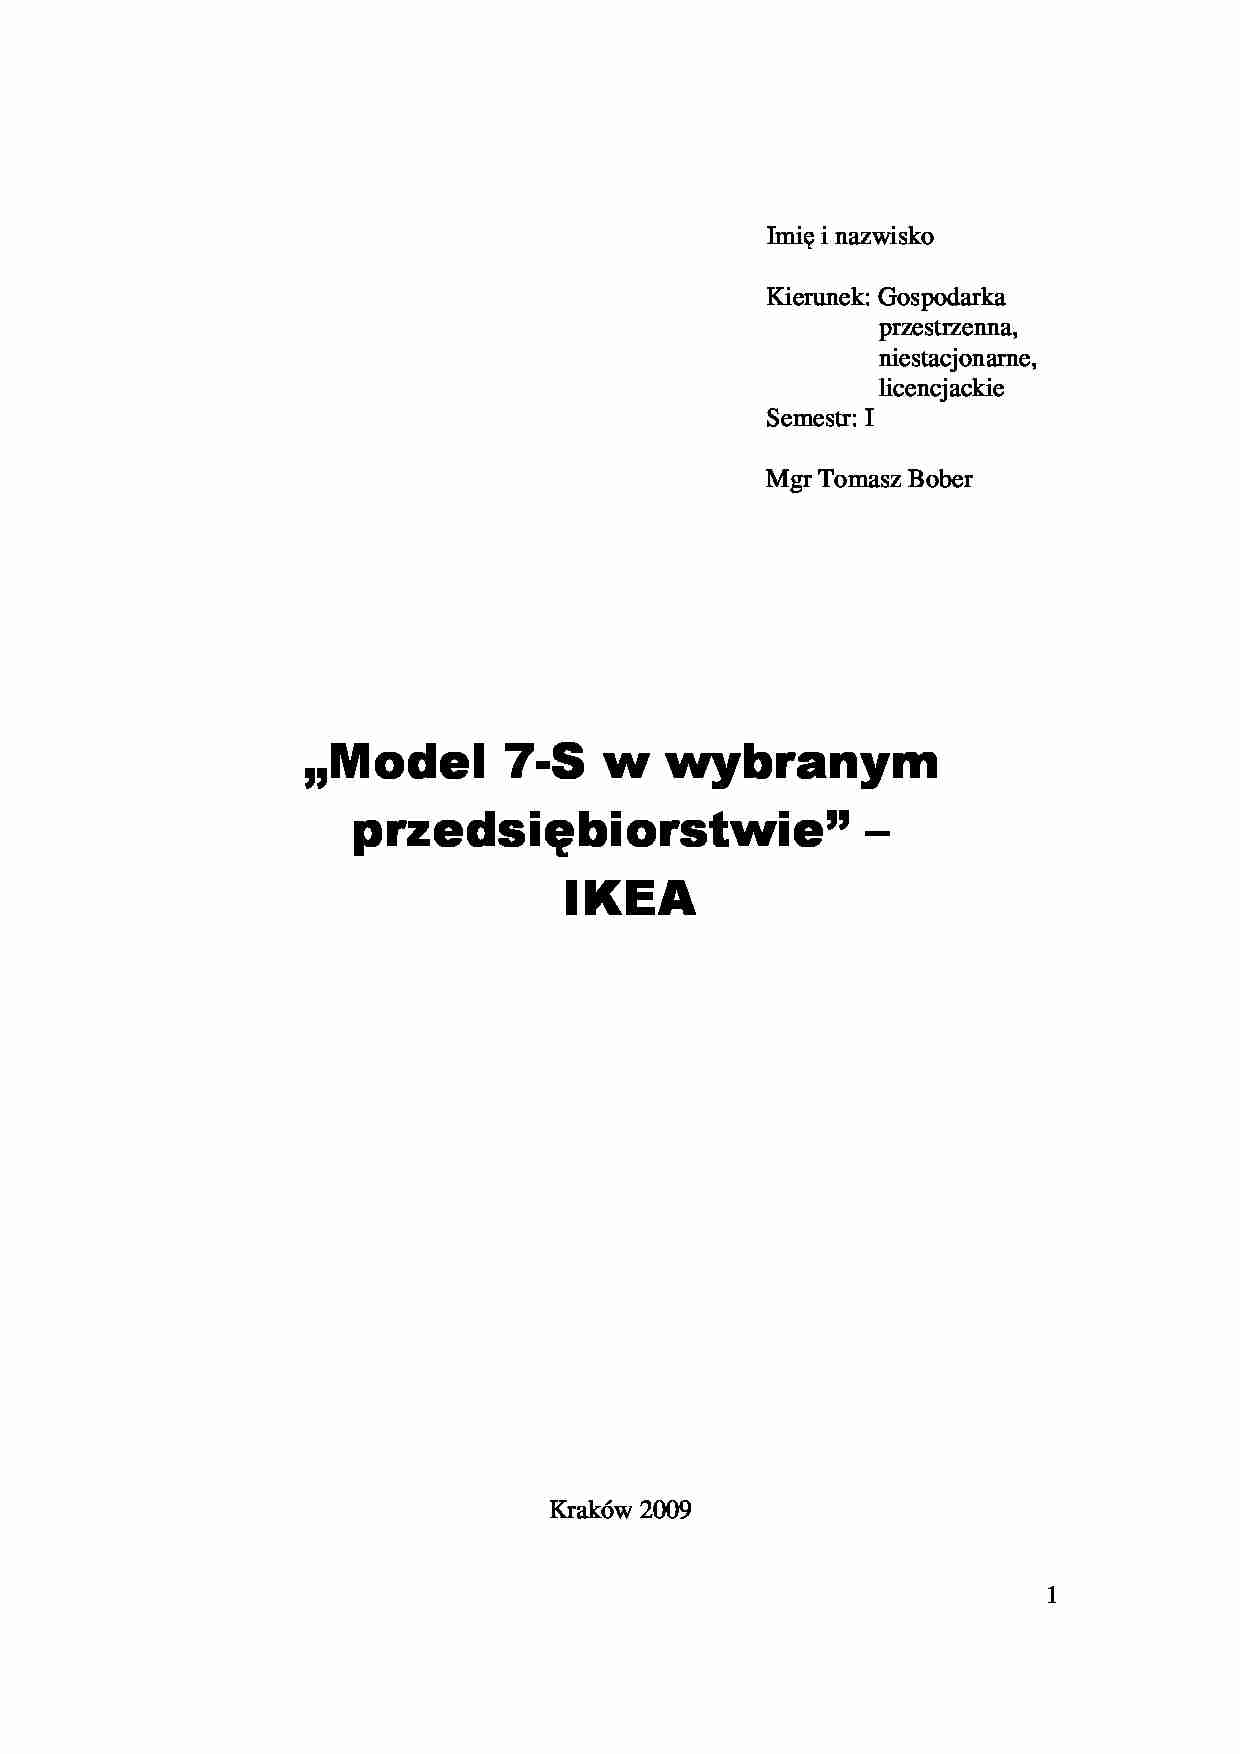 Model 7-S w wybranym przedsiębiorstwie - IKEA - strona 1